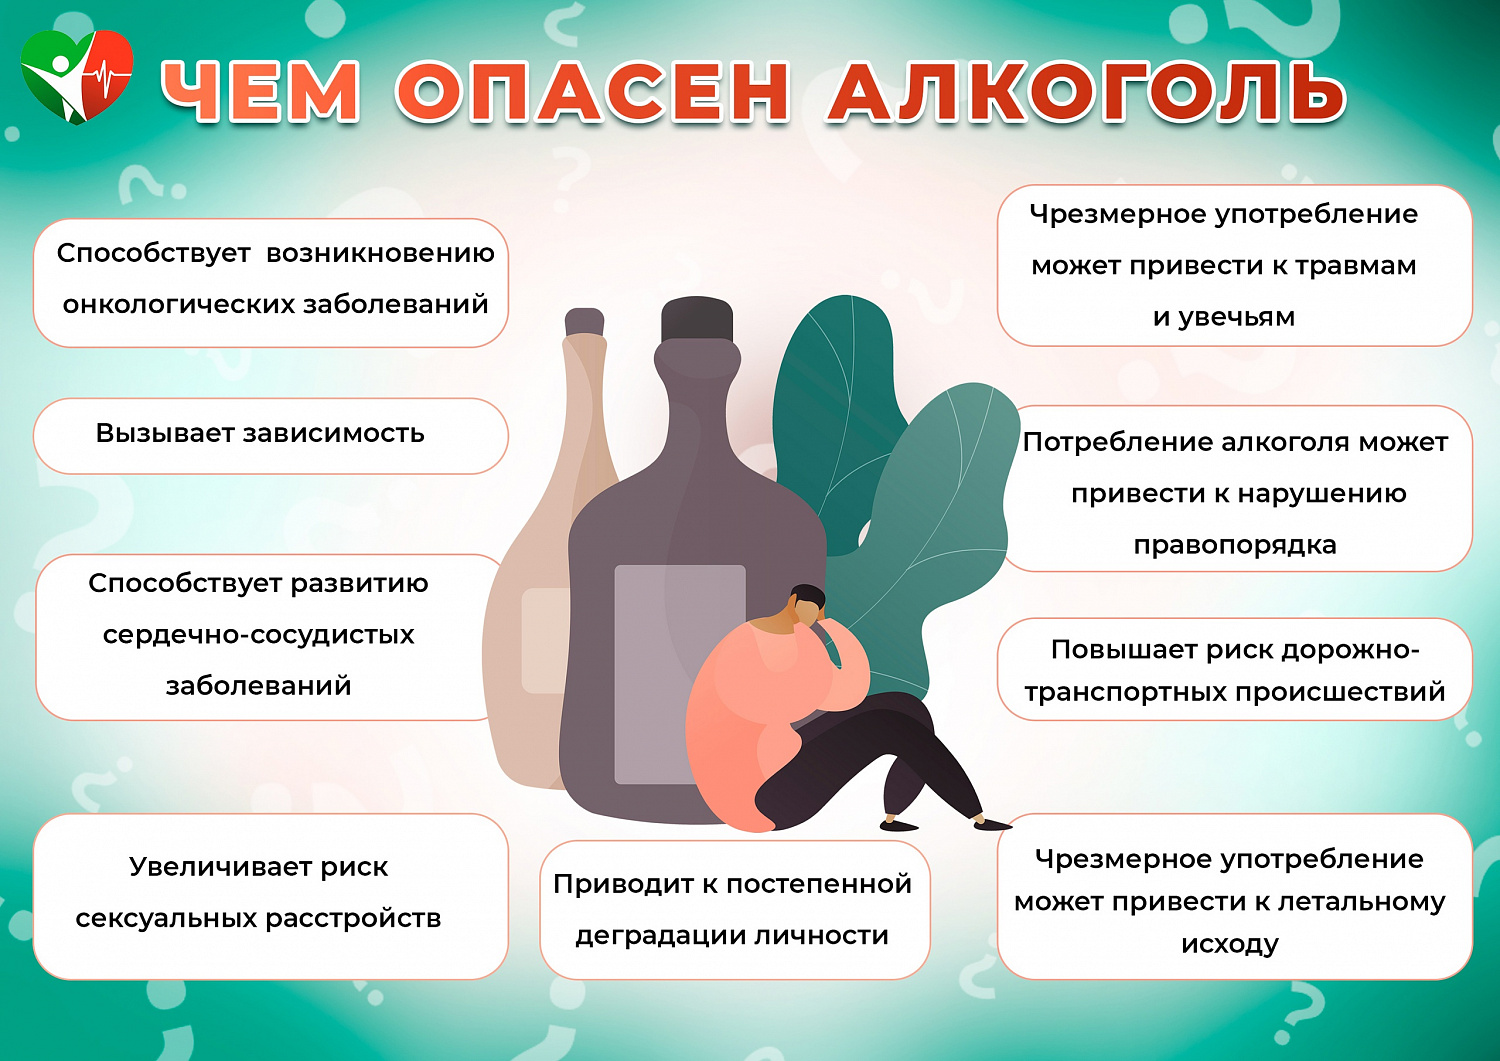 Чм опасен алкоголь?